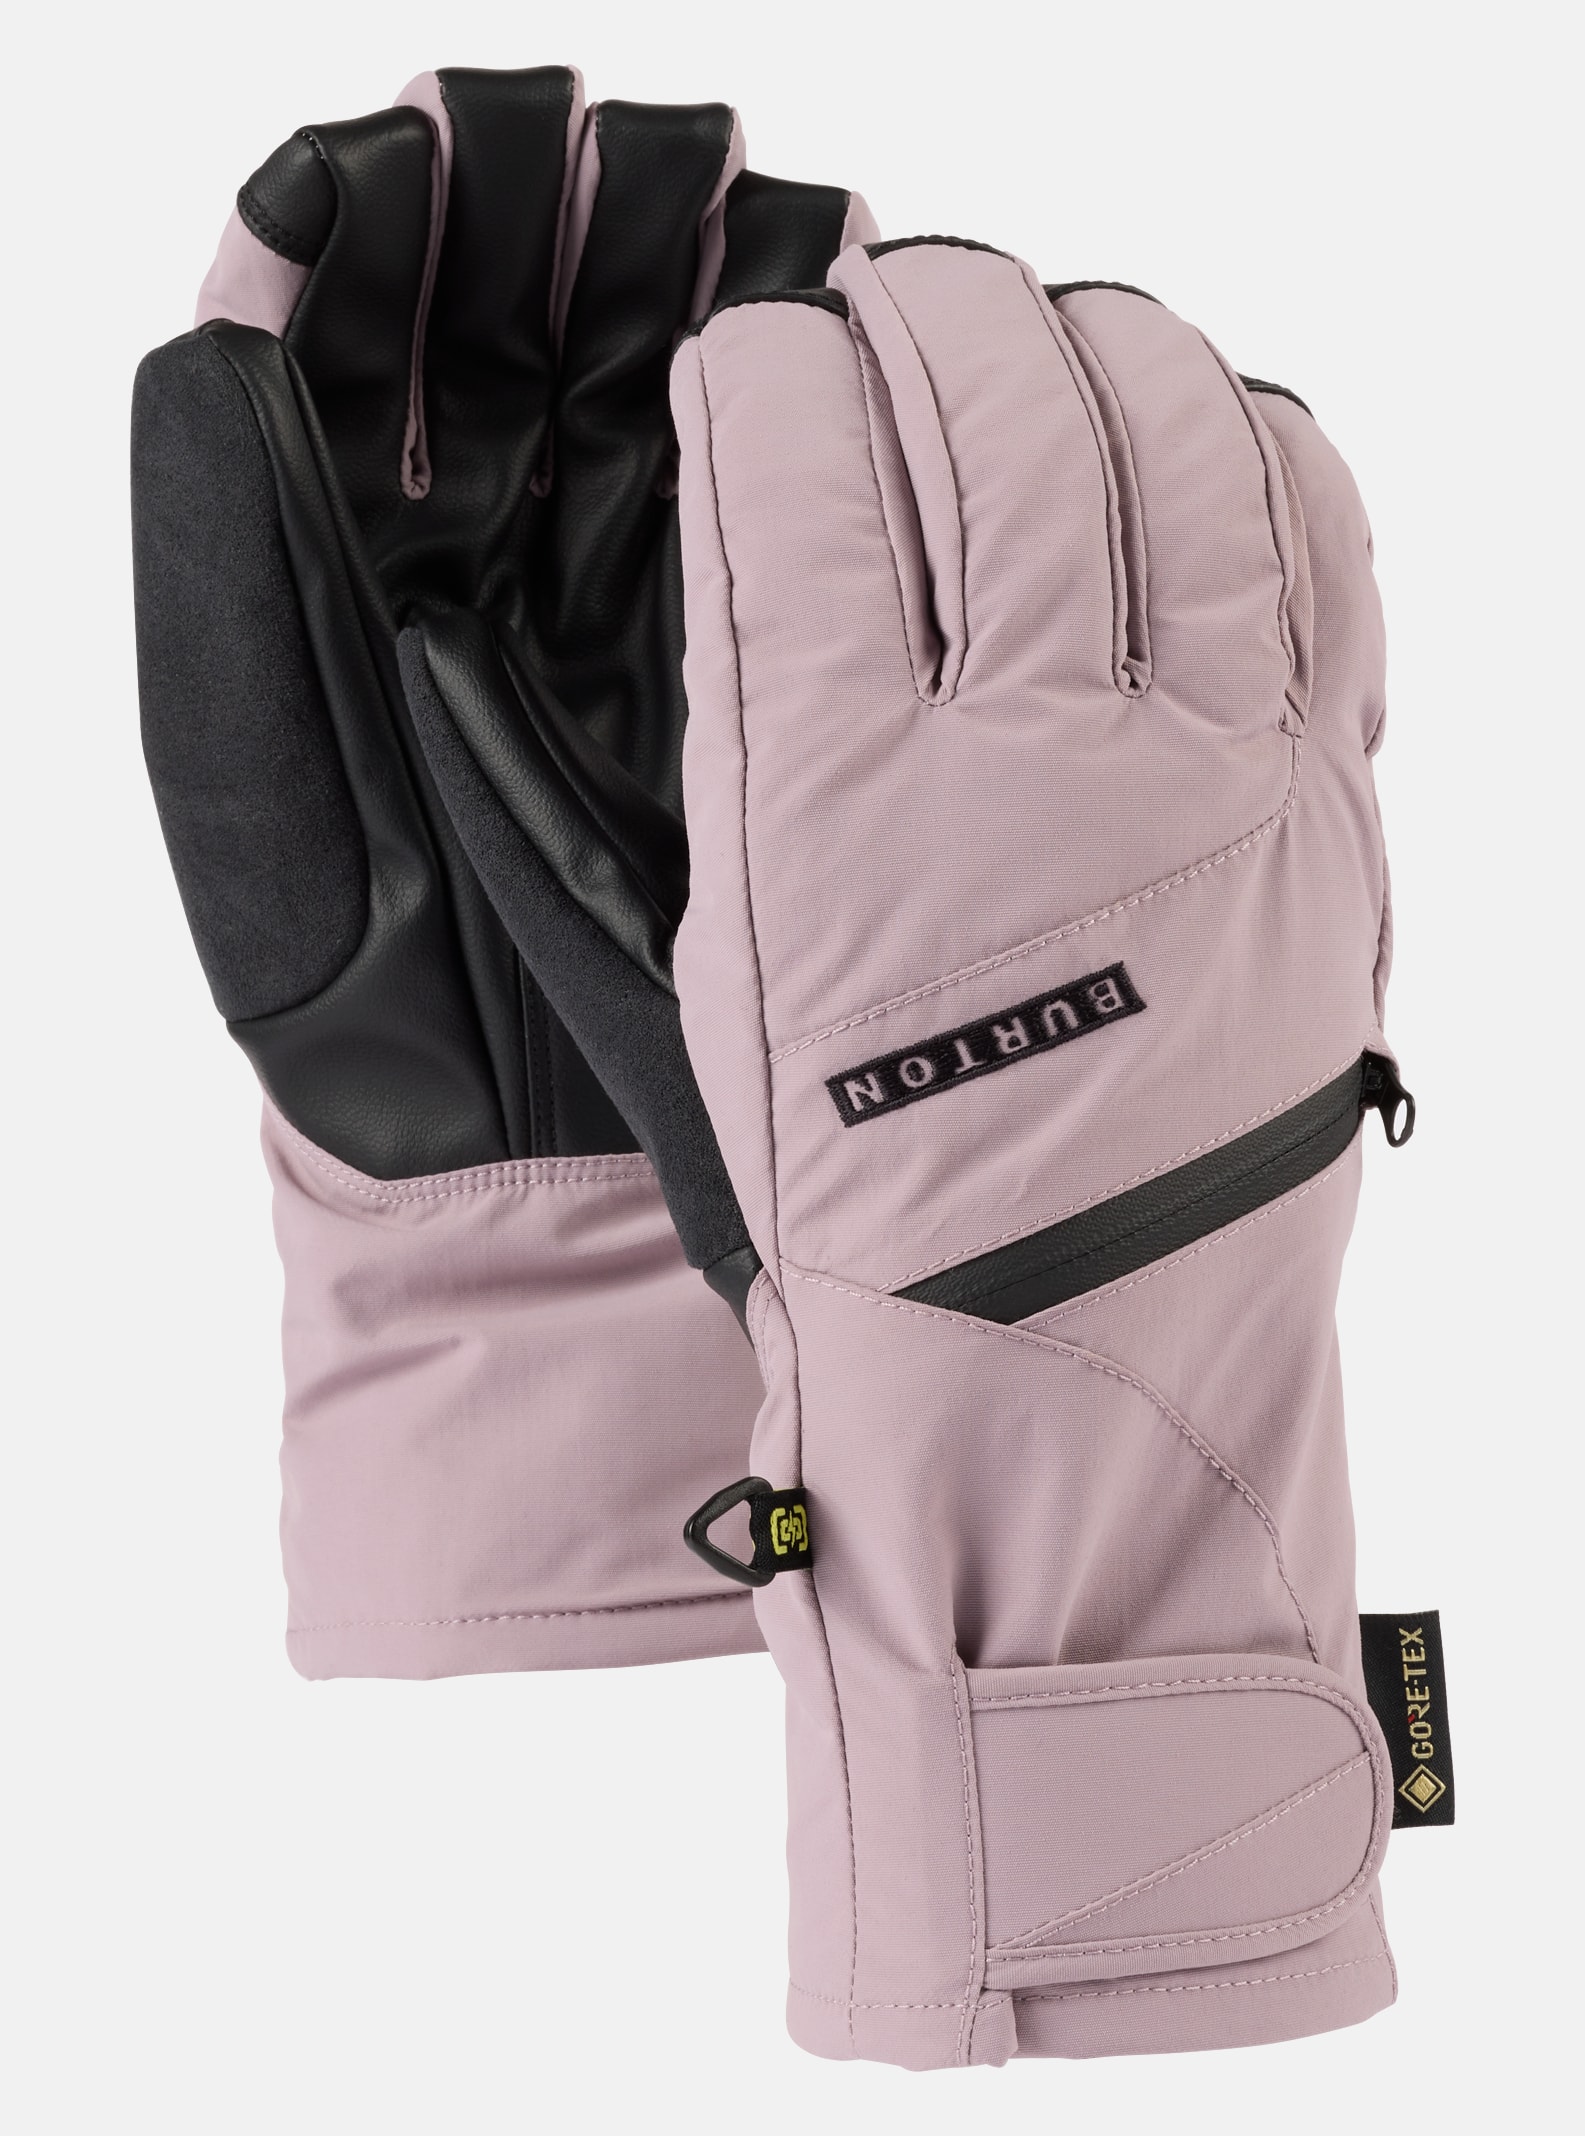 Burton Women's GORE-TEX Under Gloves, L